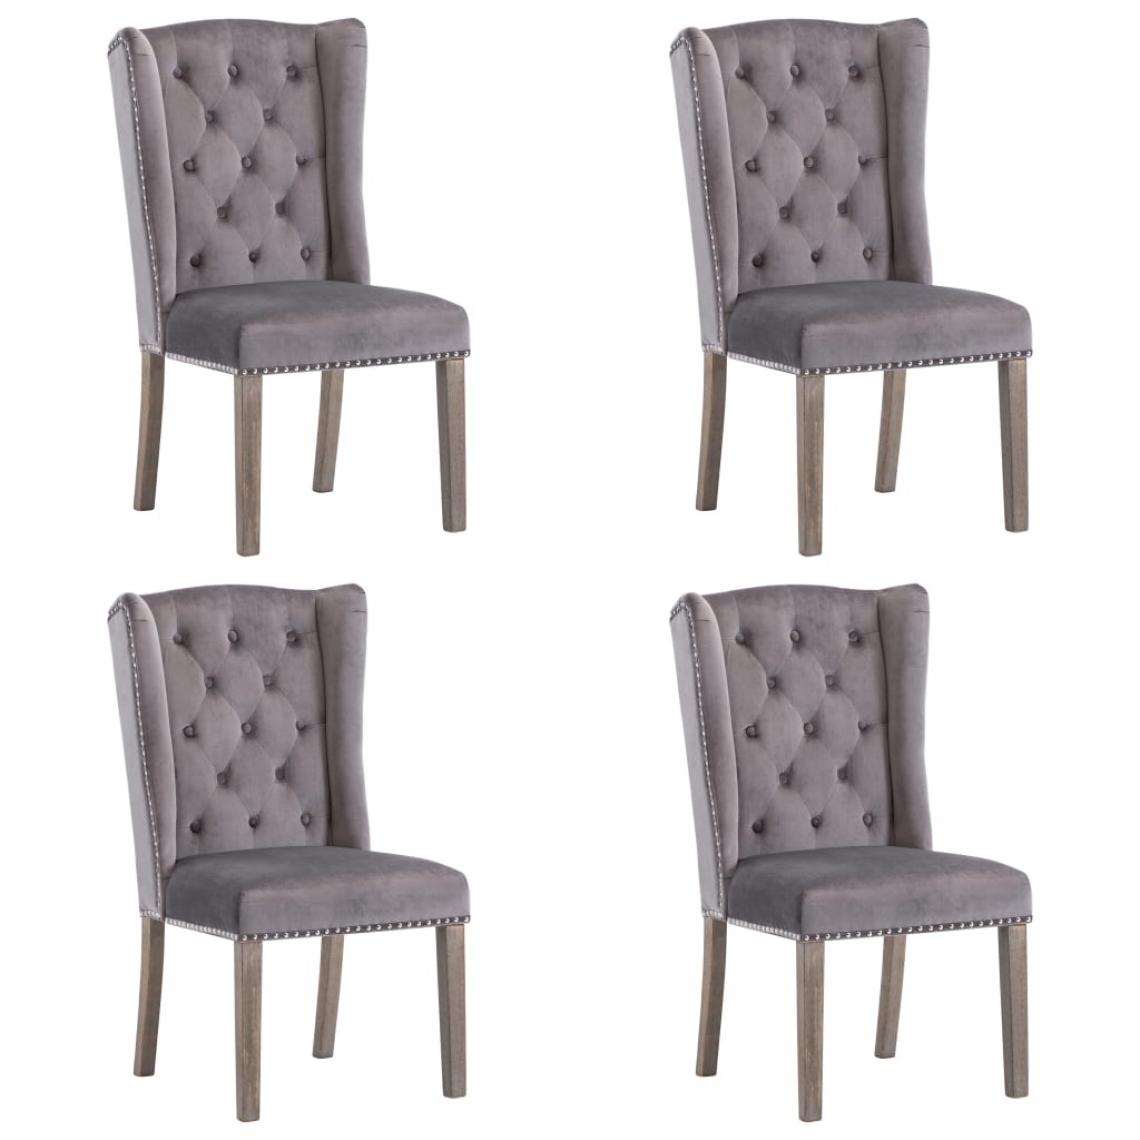 Decoshop26 - Lot de 4 chaises de salle à manger cuisine design classique velours gris CDS021618 - Chaises